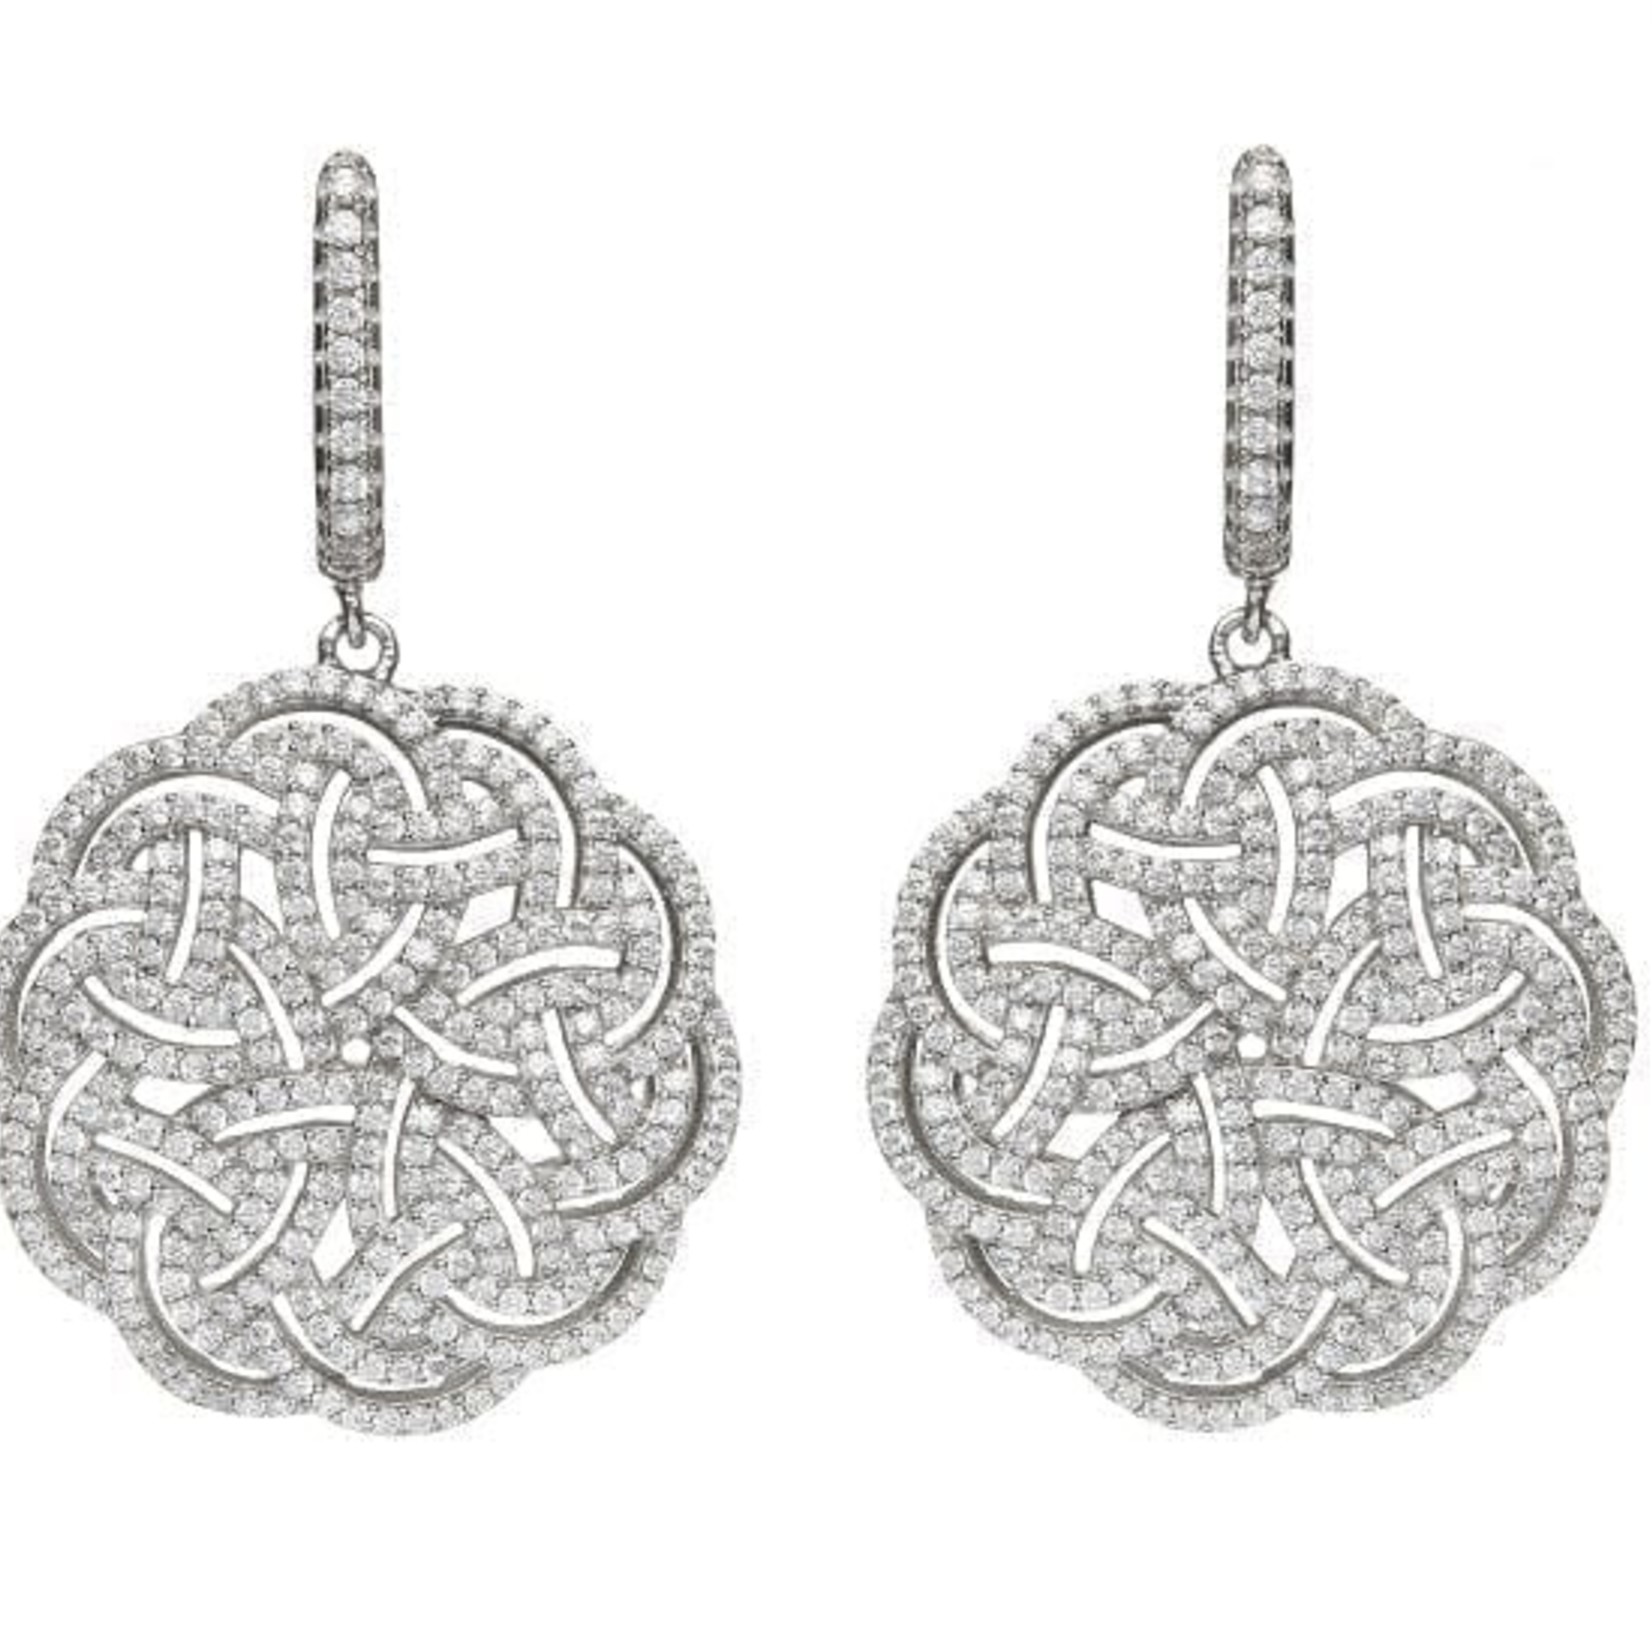 Eydís Celtic Knot Ring – Celtic Crystal Design Jewelry